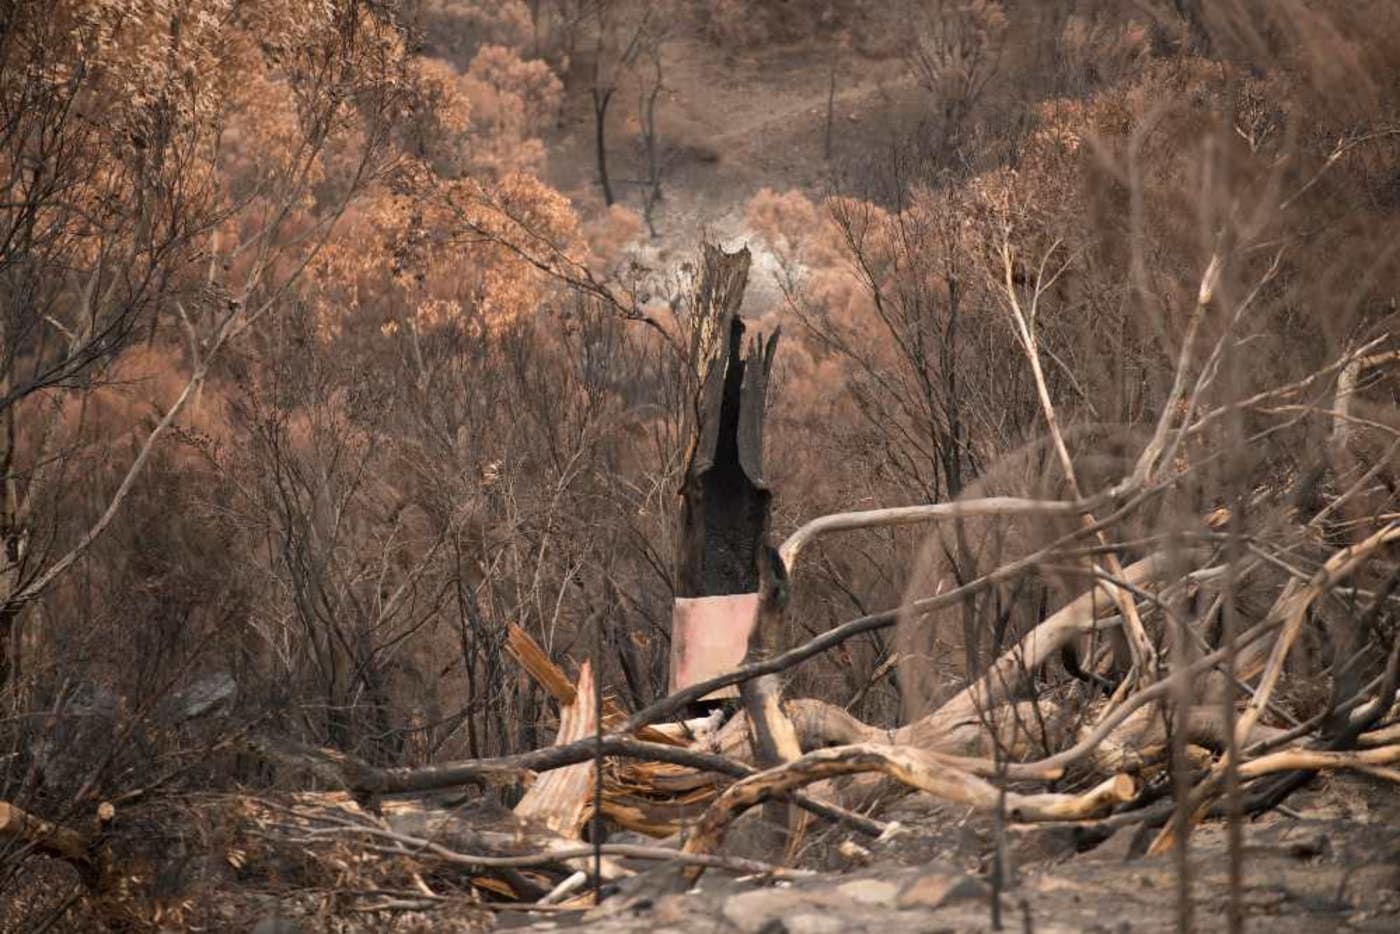 Burnt habitat on Kangaroo Island